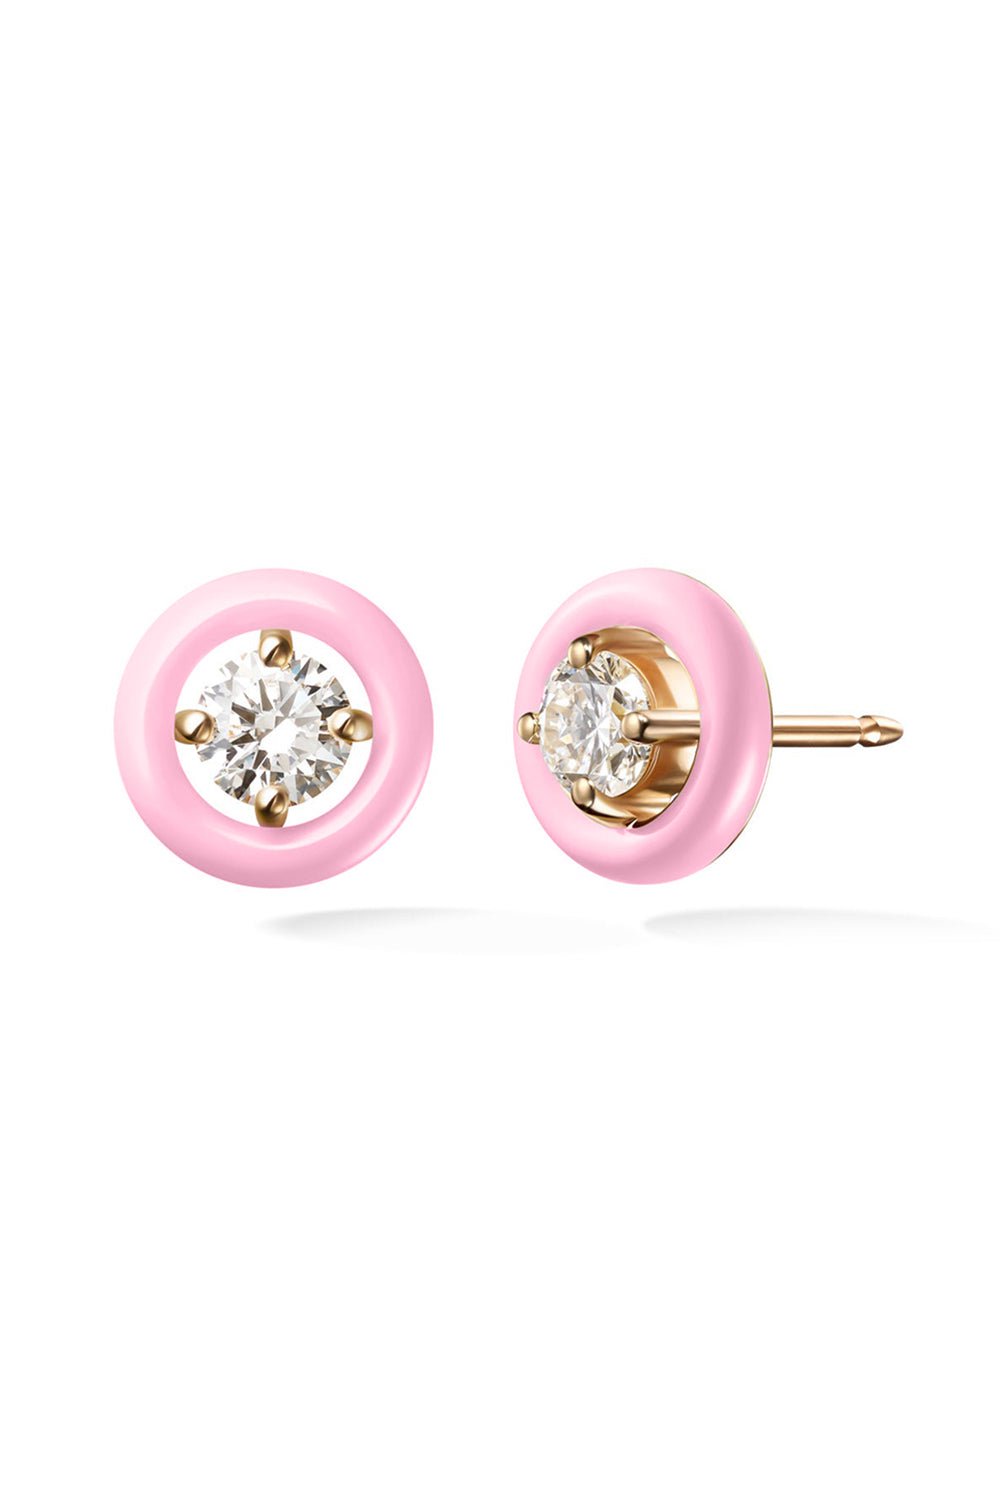 MELISSA KAYE-Marissa Pink Sylvia Diamond Stud Earrings-YELLOW GOLD